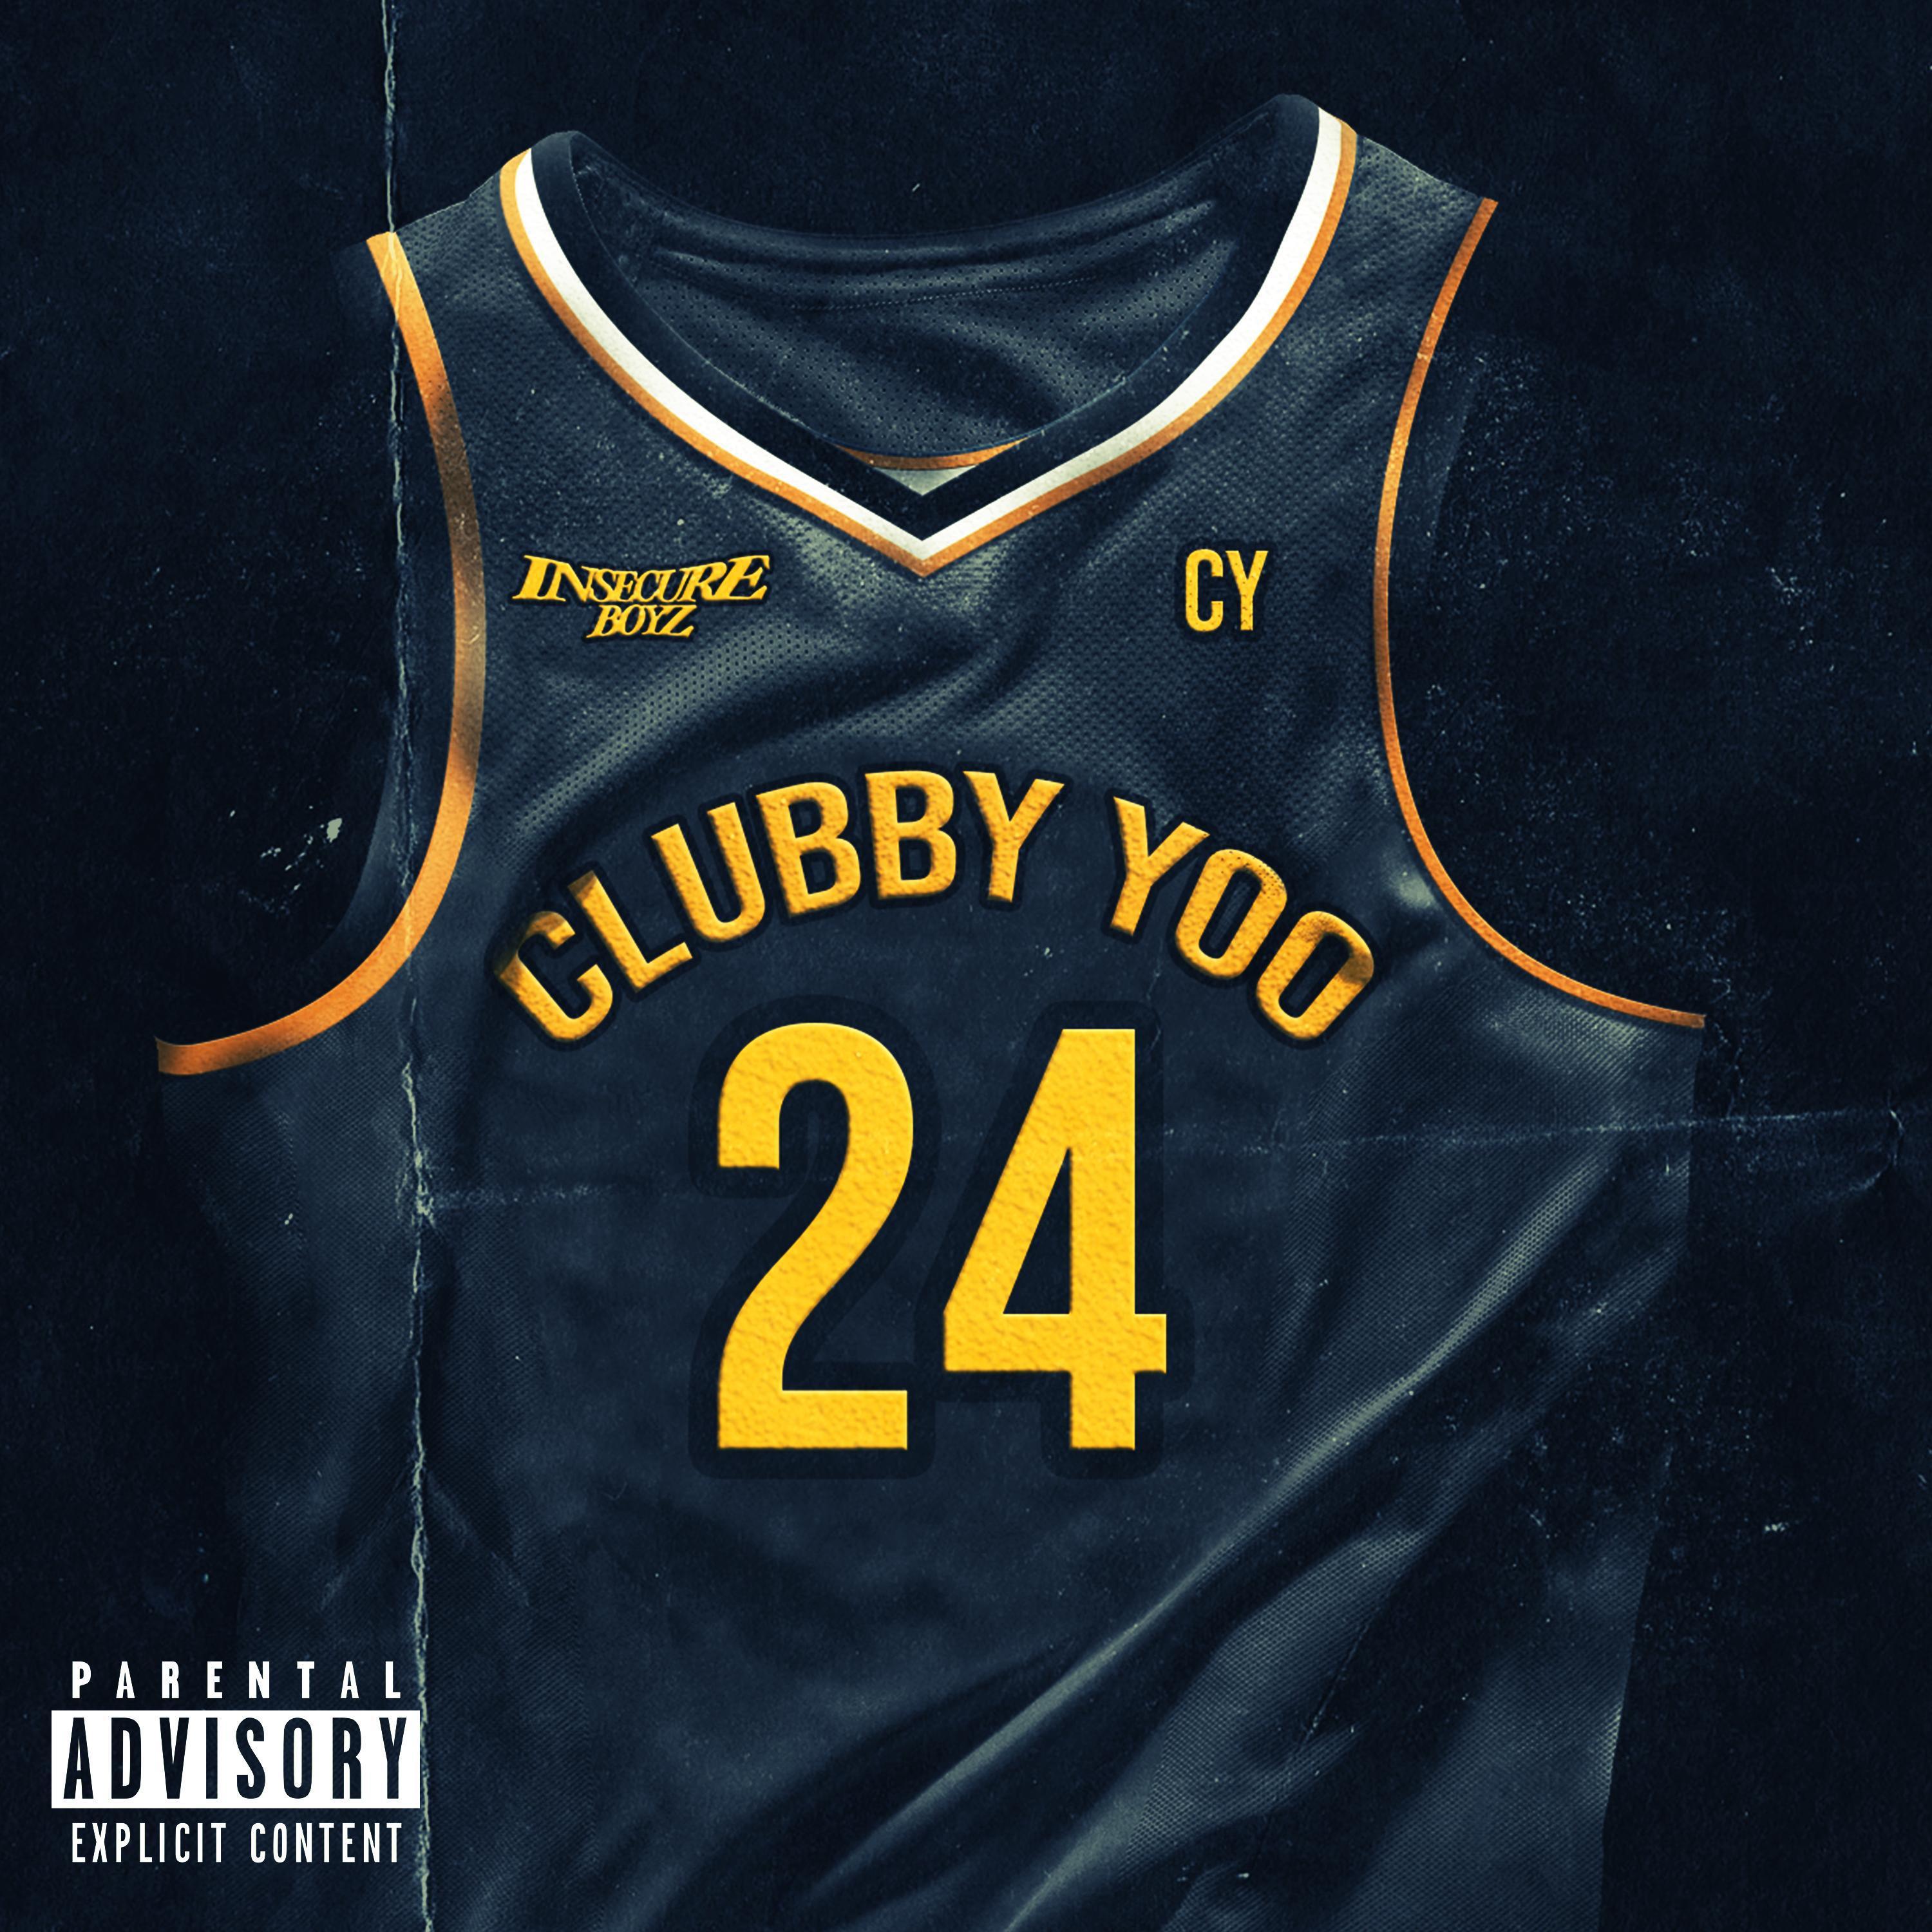 Clubby Yoo - Intro